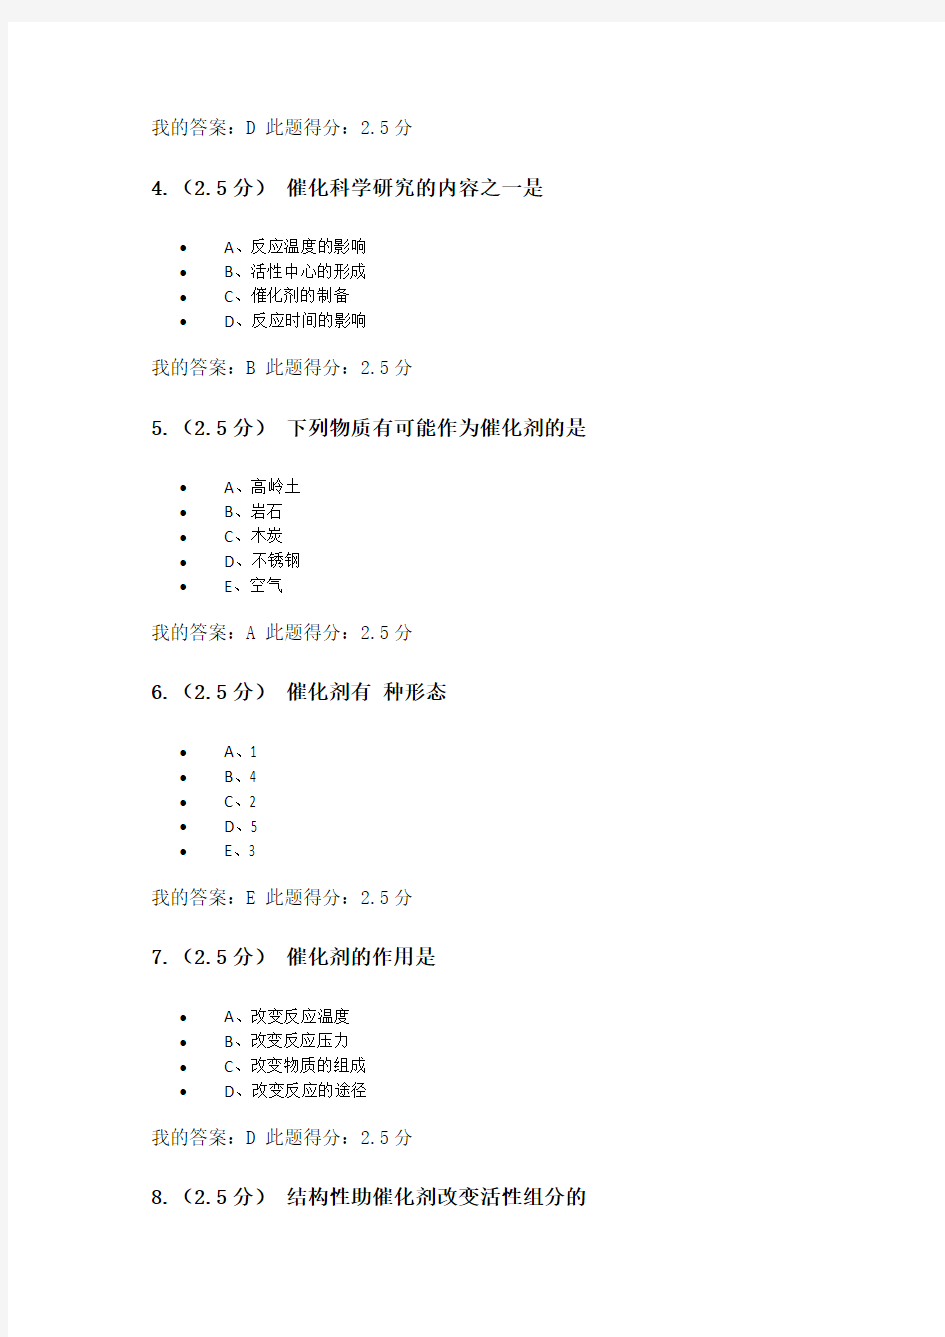 中国石油大学(北京)催化原理第一阶段在线作业100分要点